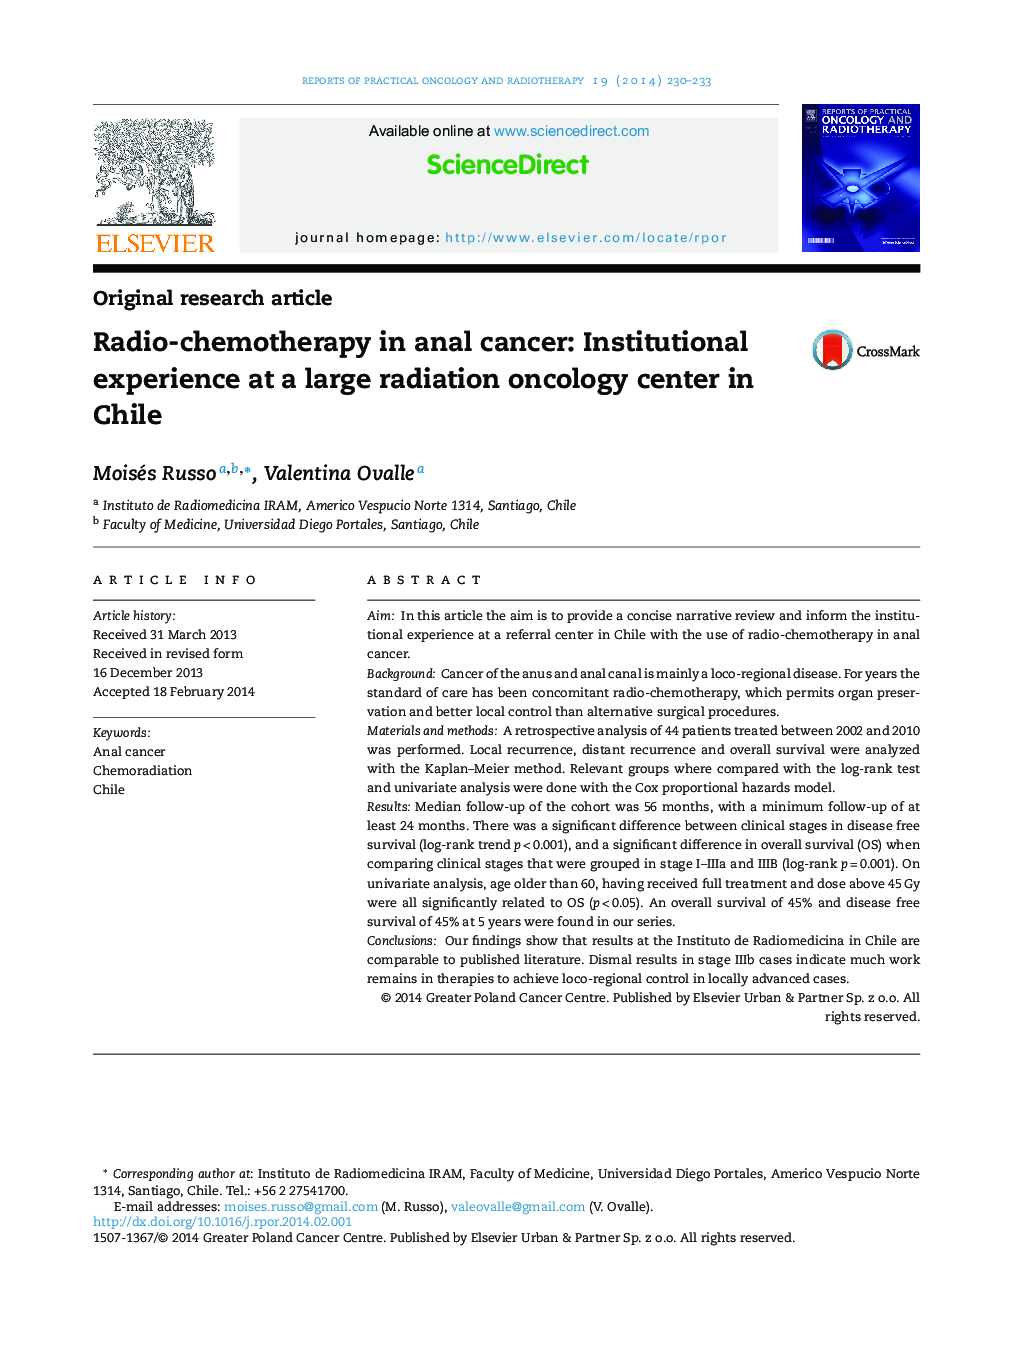 رادیو شیمی درمانی در سرطان مقعد: تجربه درمانی در یک مرکز انکولوژی عظیم شیلی در شیلی 